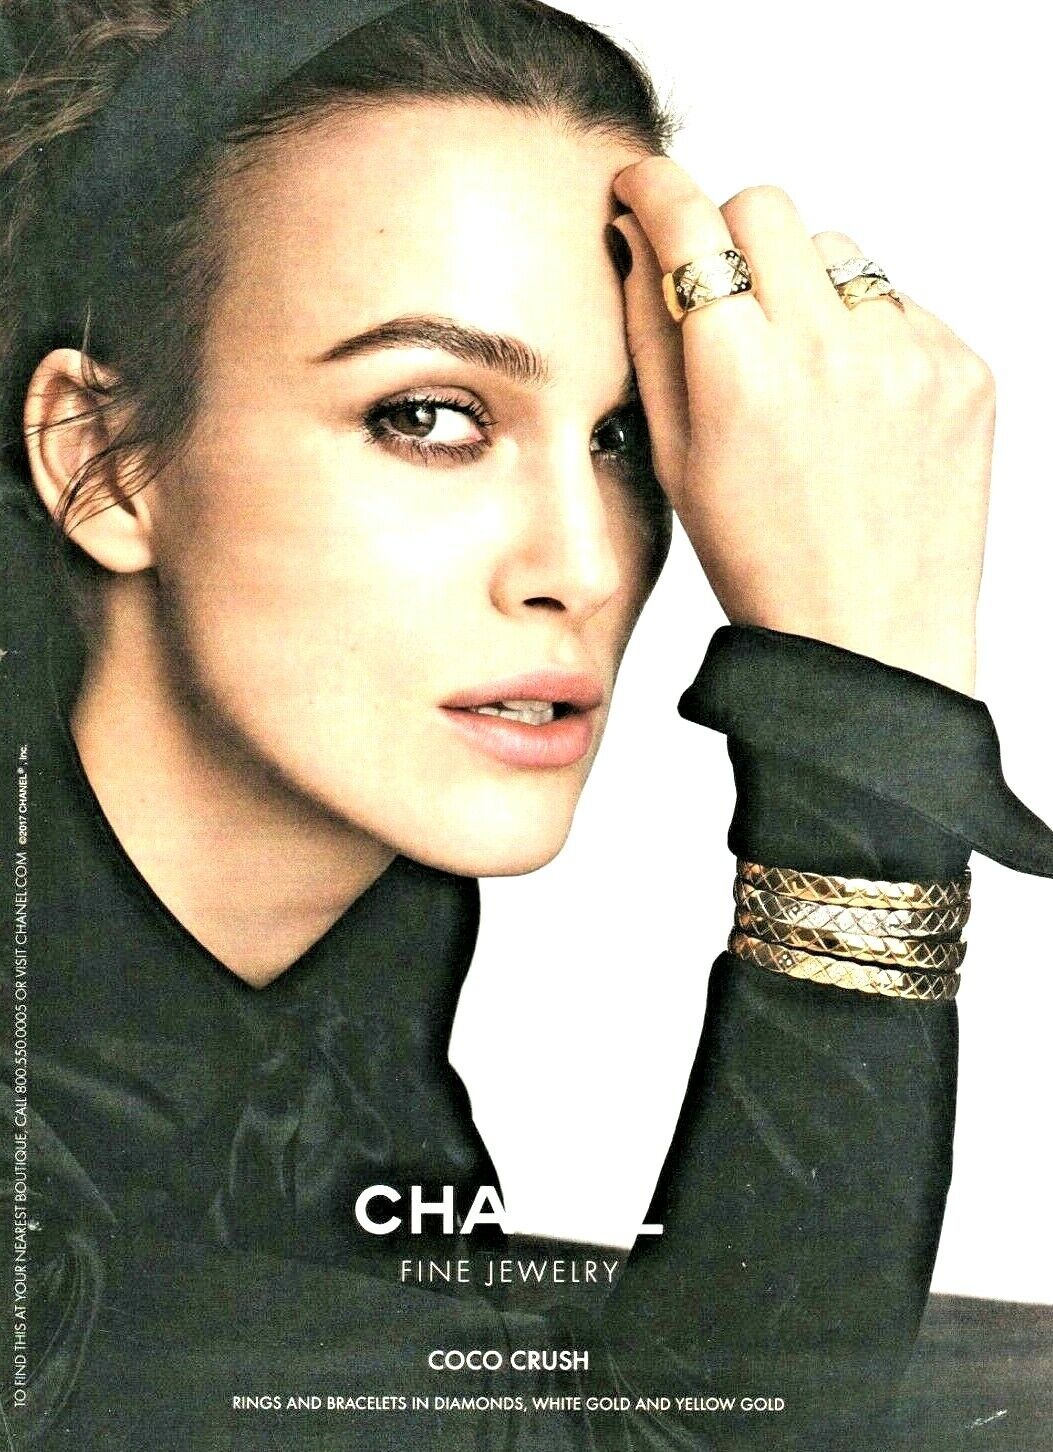 CHANEL fine jewelry vintage print ad from 2017 magazine Kiera Knightly bracelet